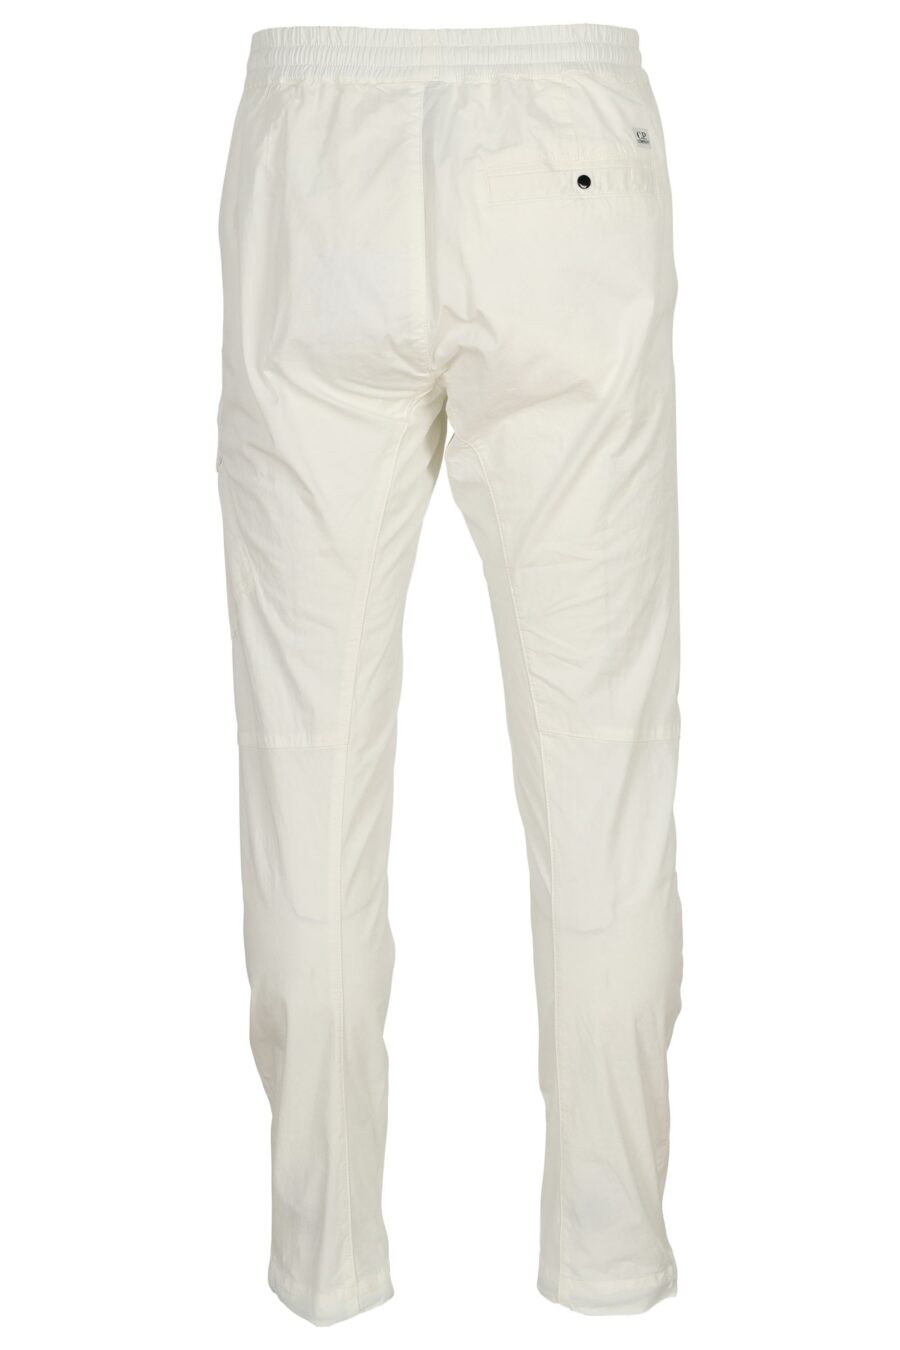 Pantalón blanco cargo con minilogo lente - 7620943804751 2